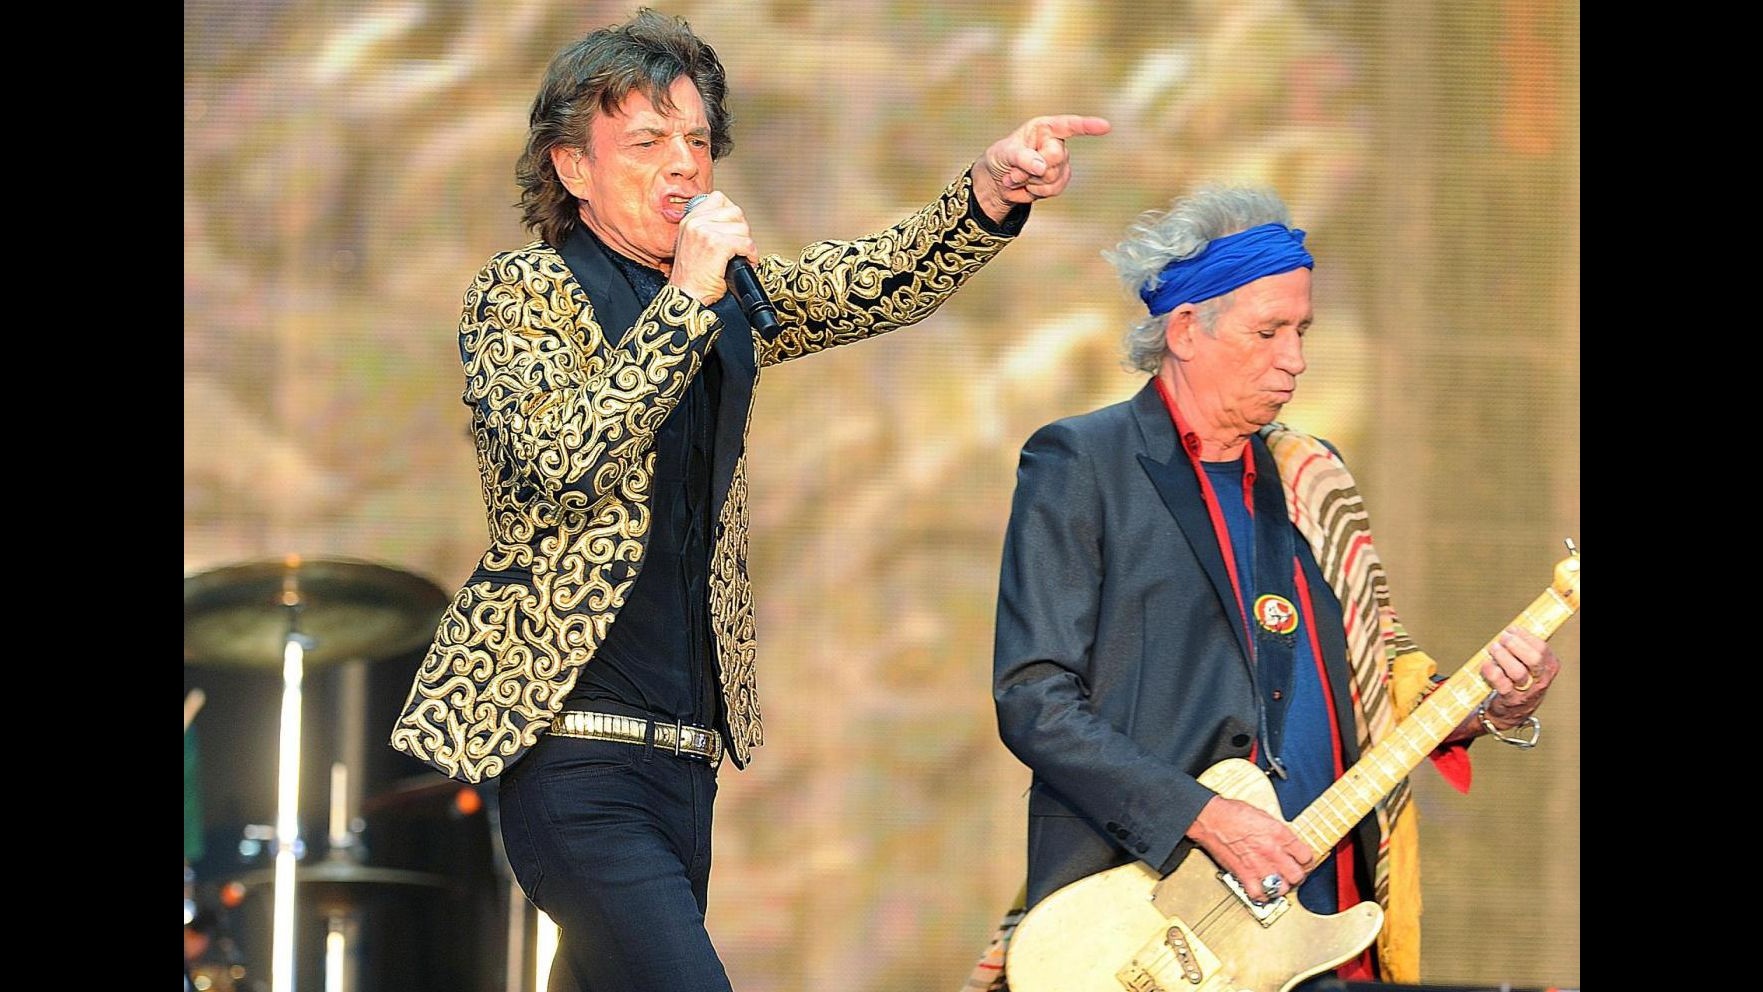 Mick Jagger compie 70 anni: una vita di eccessi ma grinta senza tempo